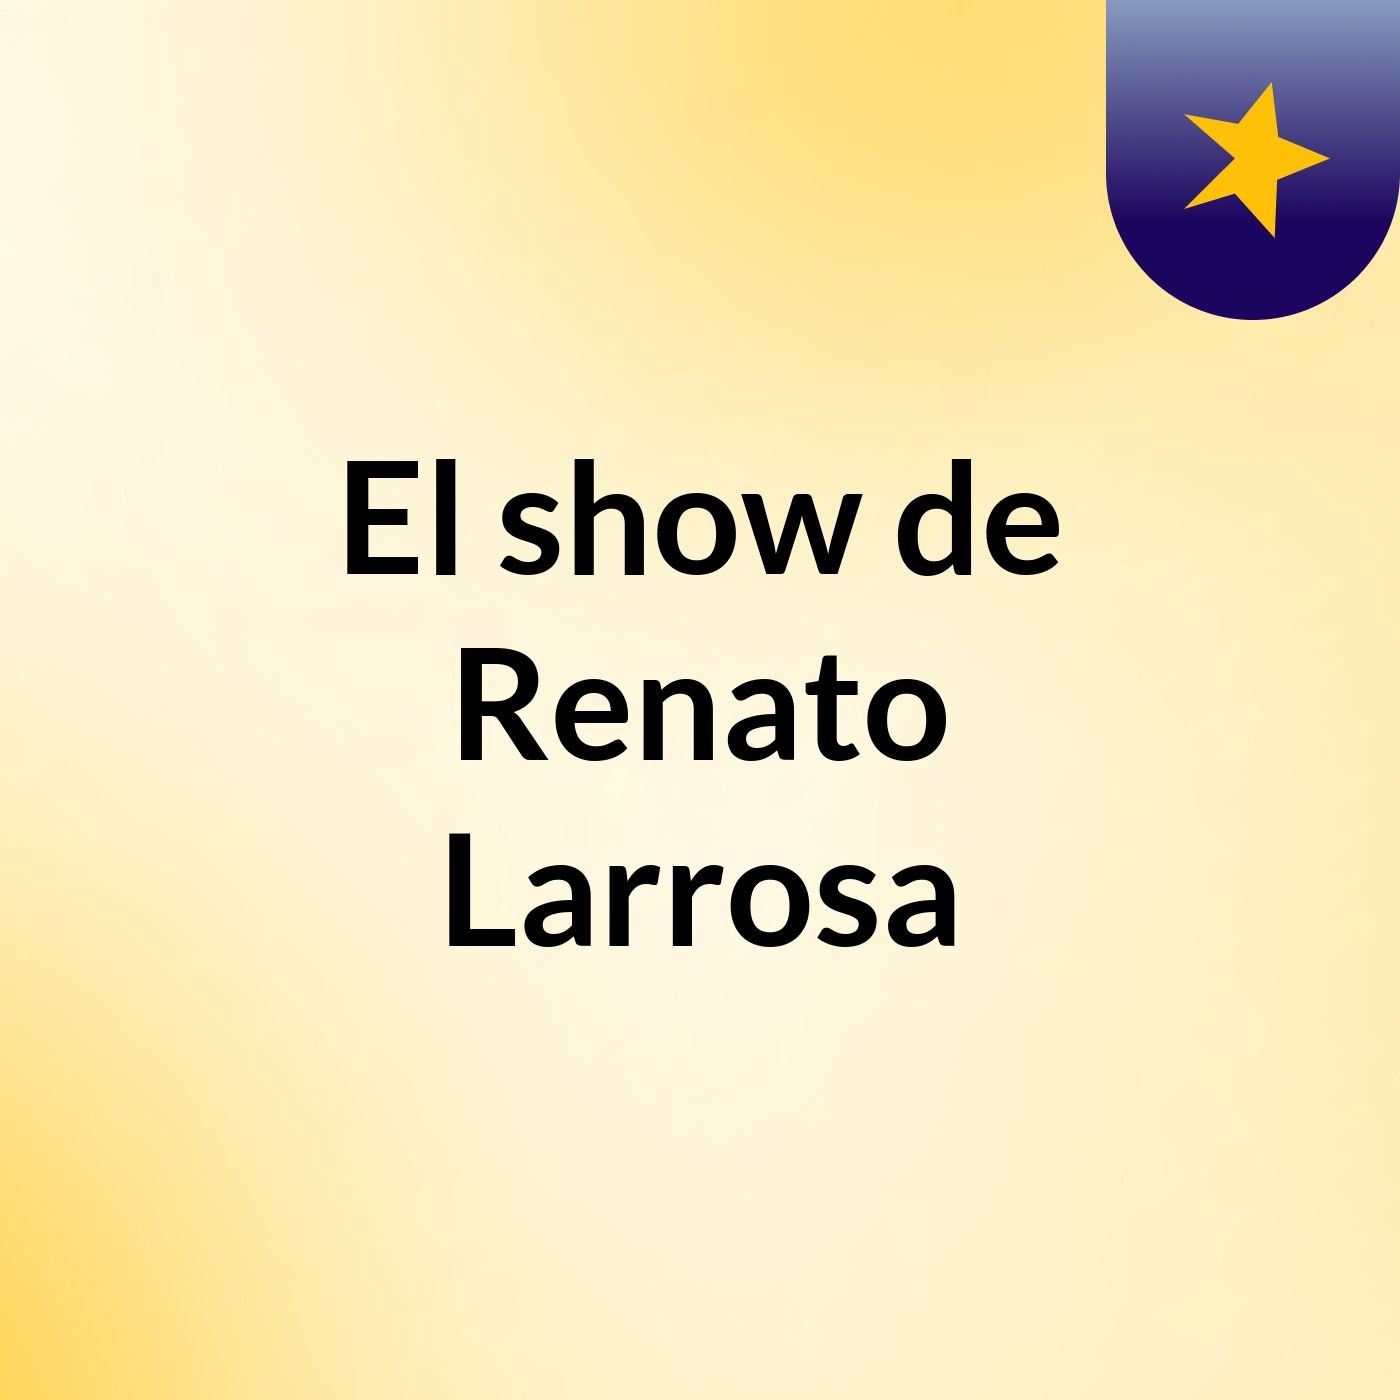 El show de Renato Larrosa